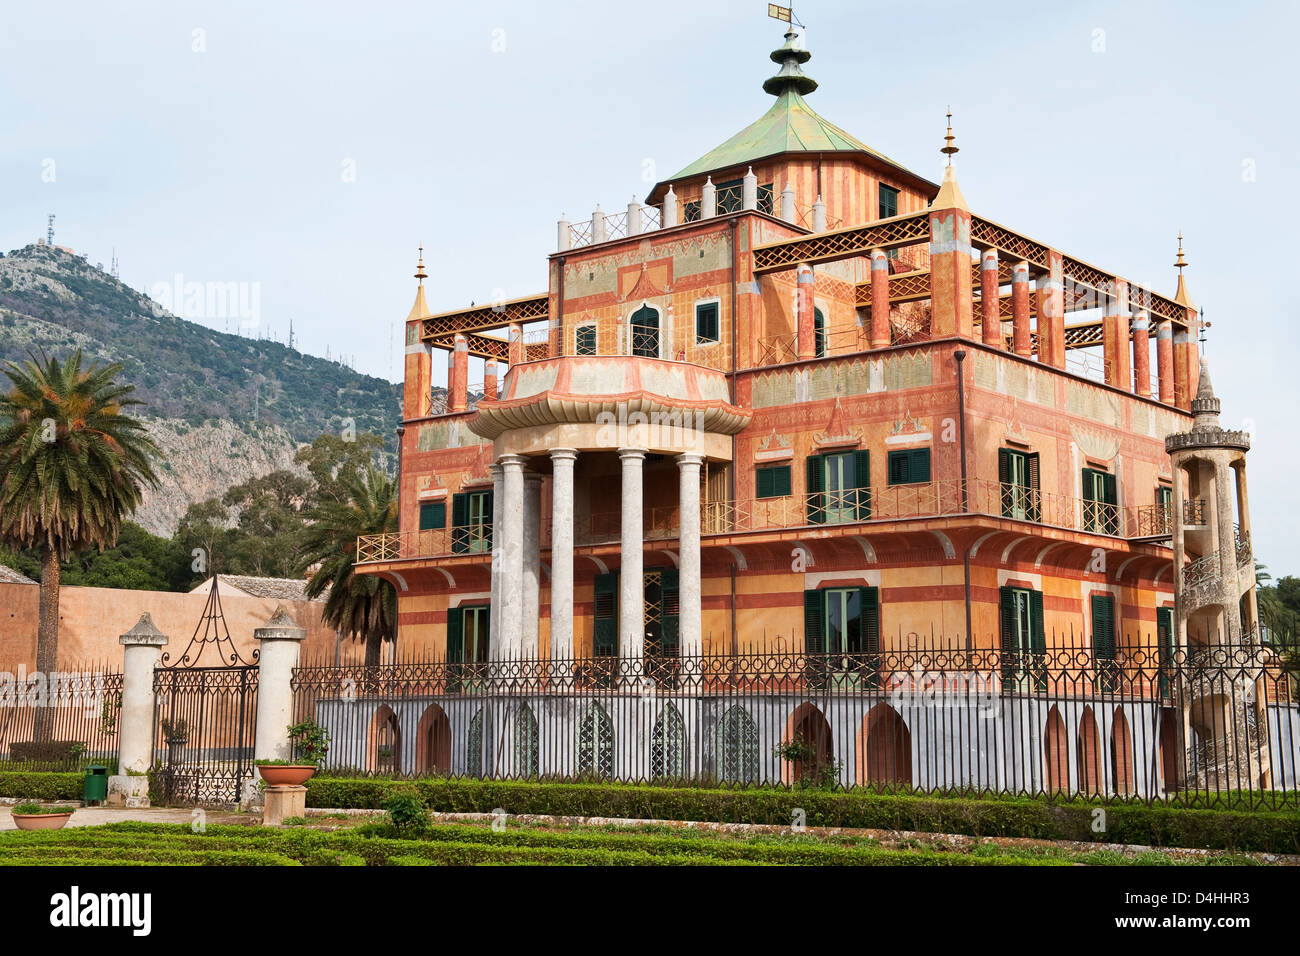 Le Palazzina Cinese (Palais chinois), Palerme, Sicile, Italie, a été construit dans le style oriental en 1799 pour la famille Bourbon régnante Banque D'Images